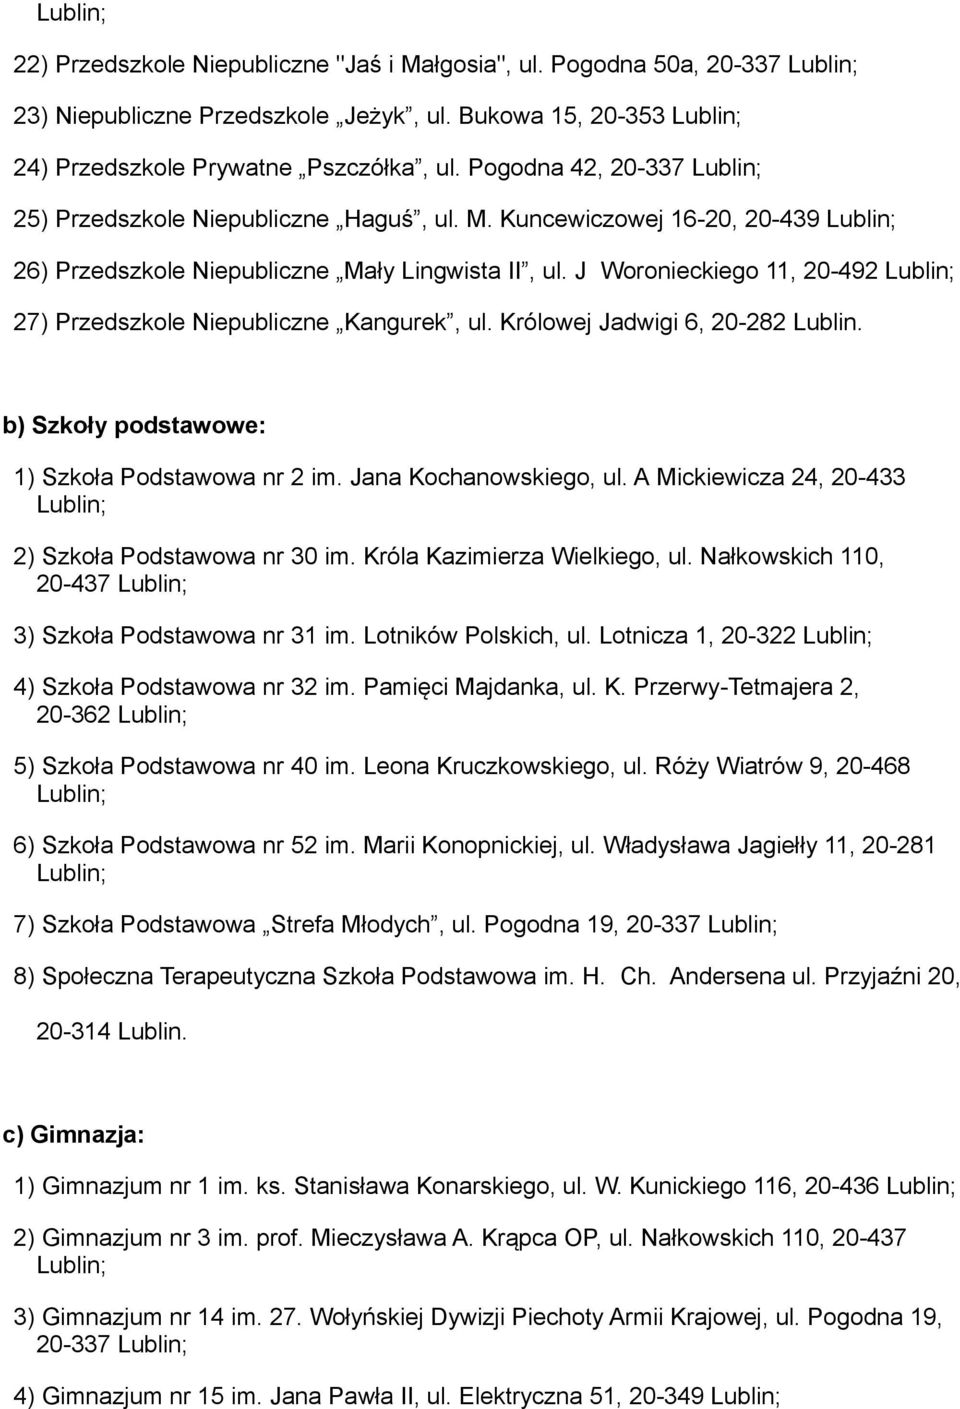 Teren działania poradni psychologiczno-pedagogicznych prowadzonych przez  miasto Lublin - PDF Free Download